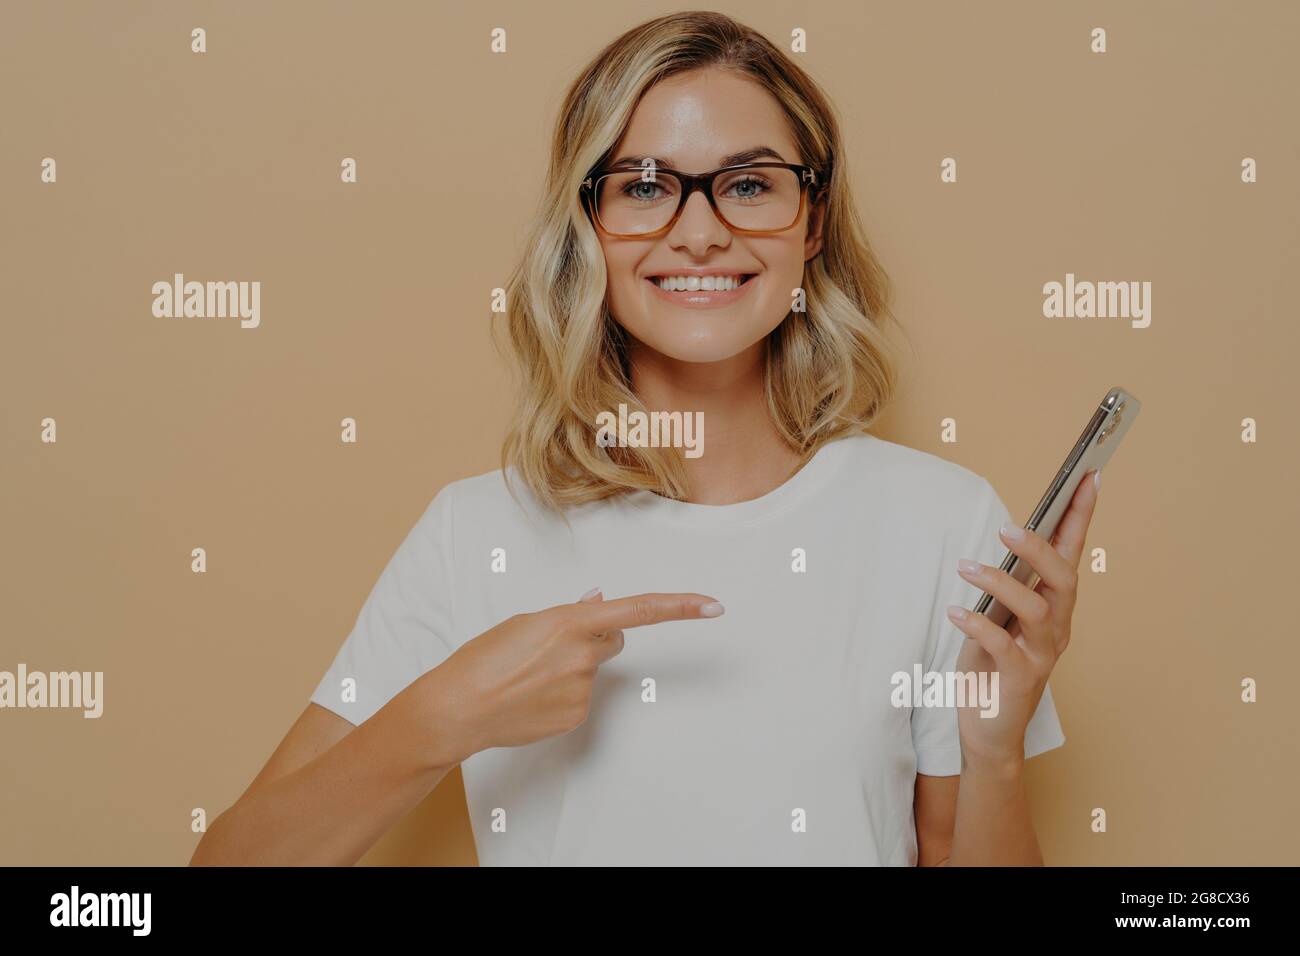 Portrait d'une jeune femme blonde impressionnée et excitée montrant quelque chose d'impressionnant sur son écran de téléphone Banque D'Images